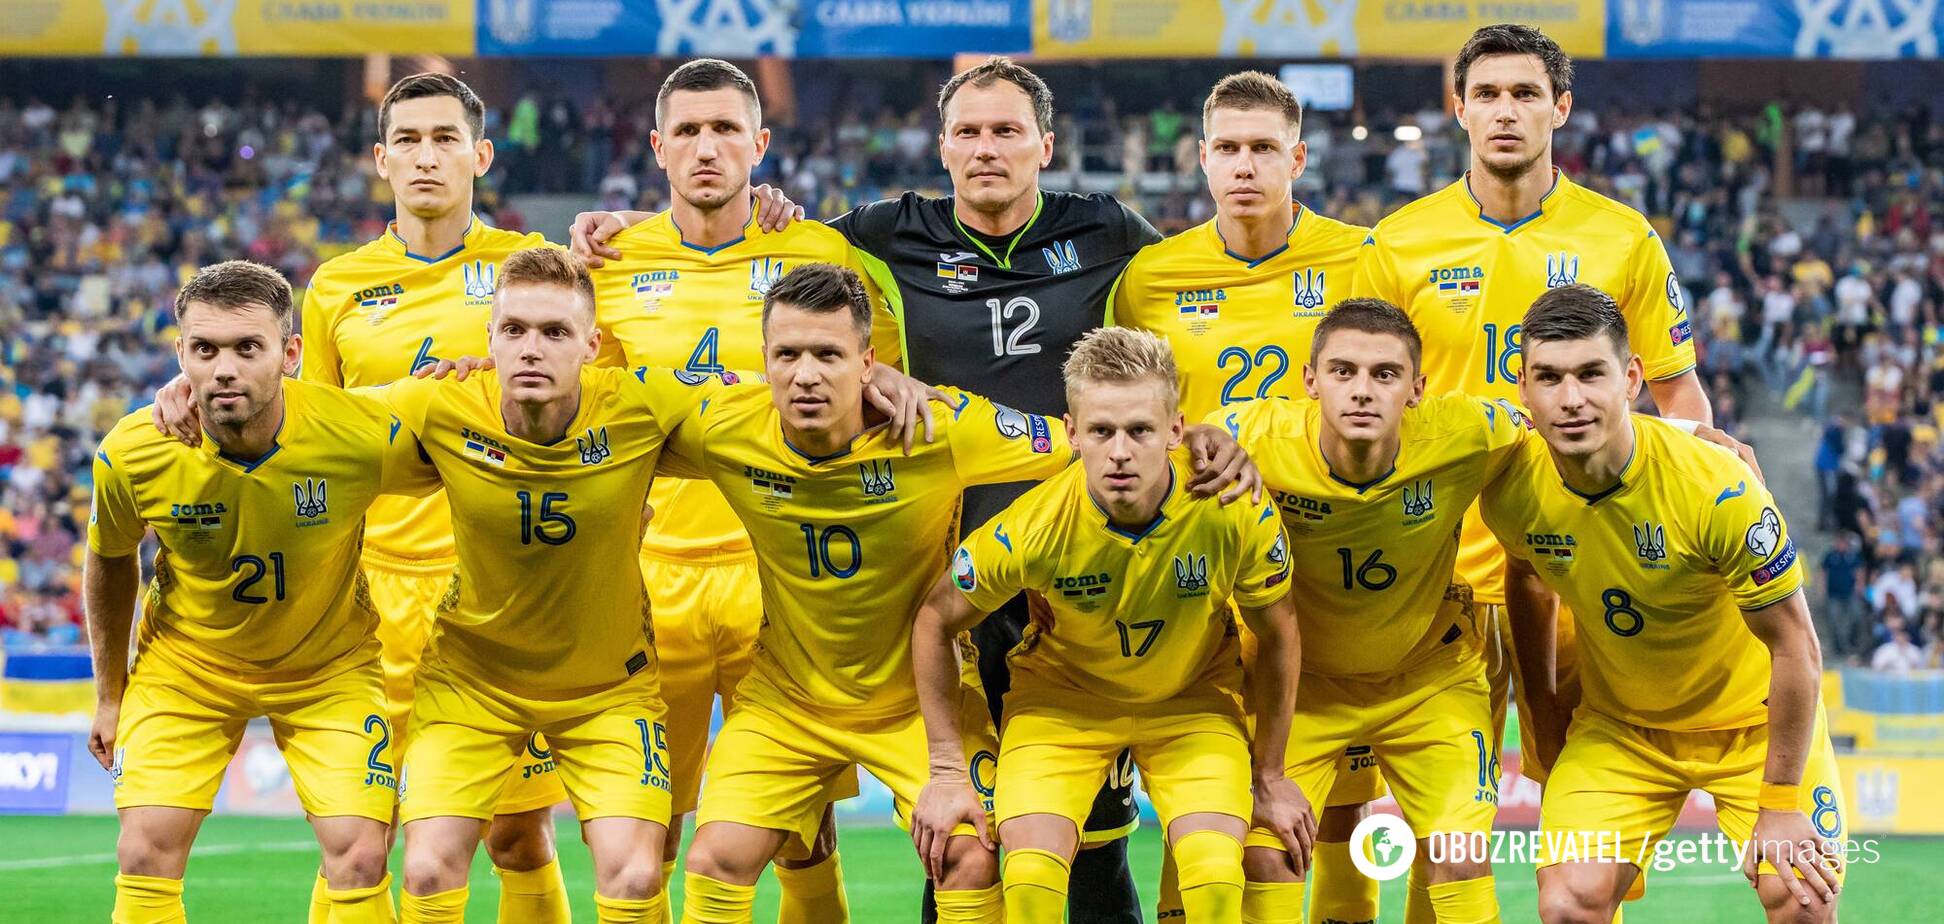 Представлена нова форма збірної України з футболу